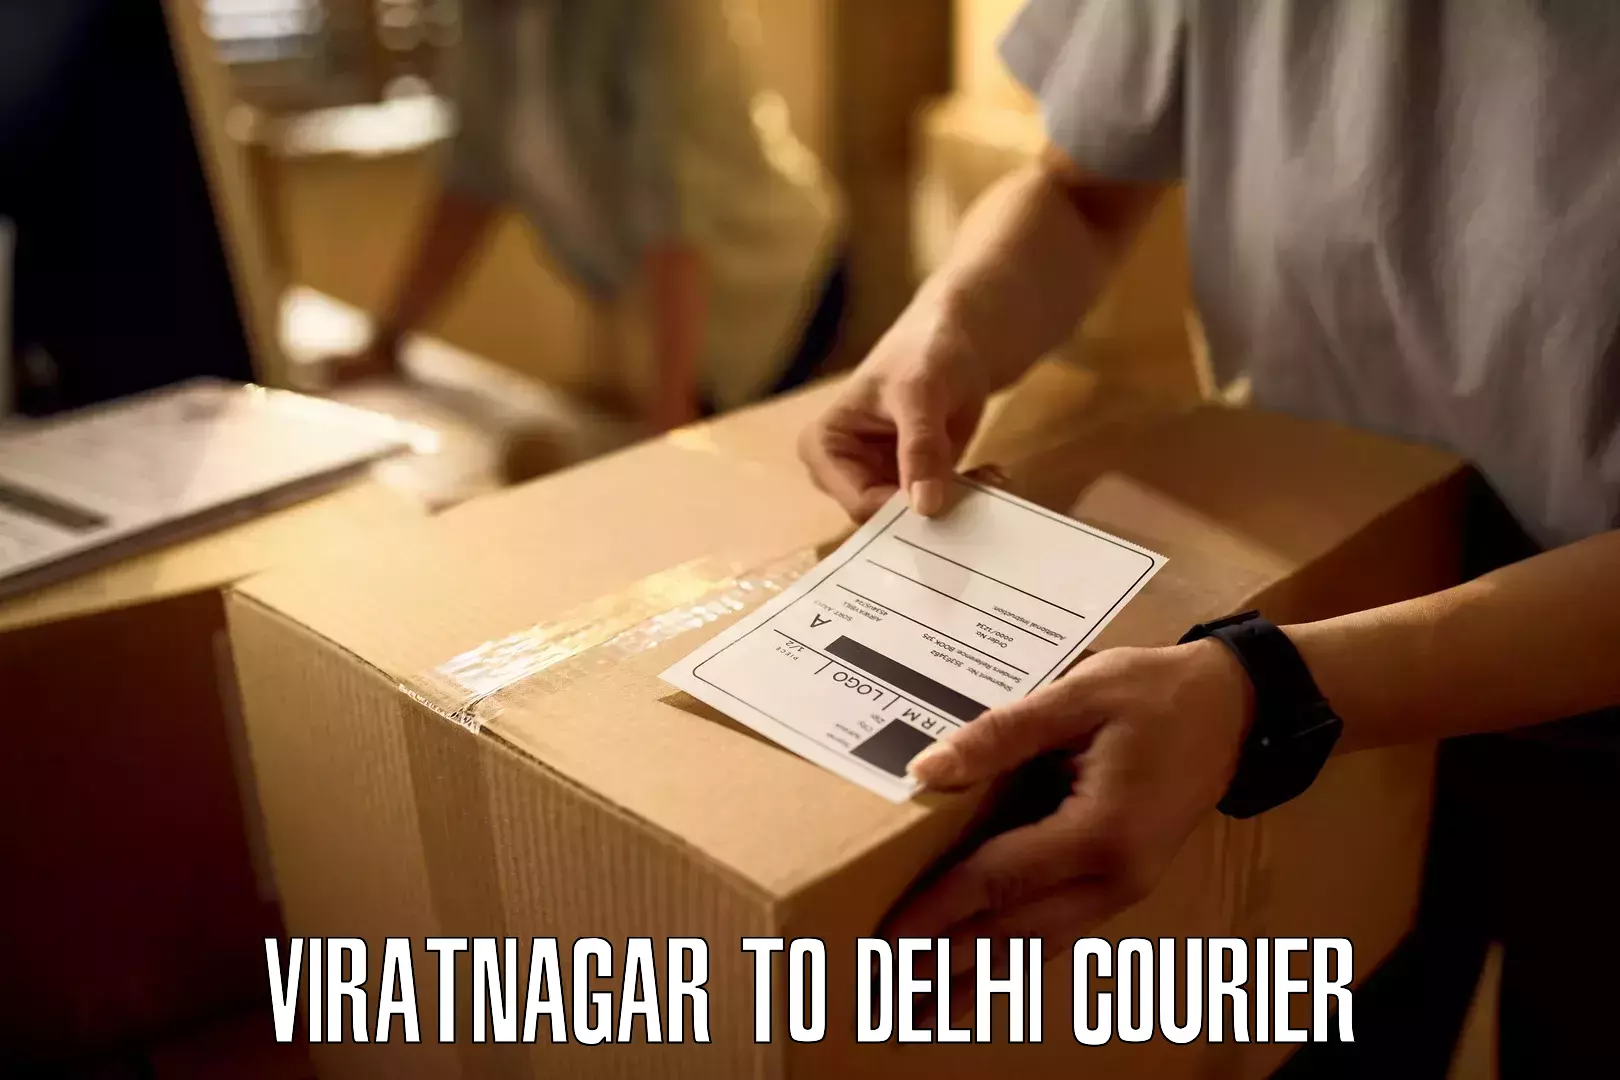 Next-day freight services Viratnagar to Delhi